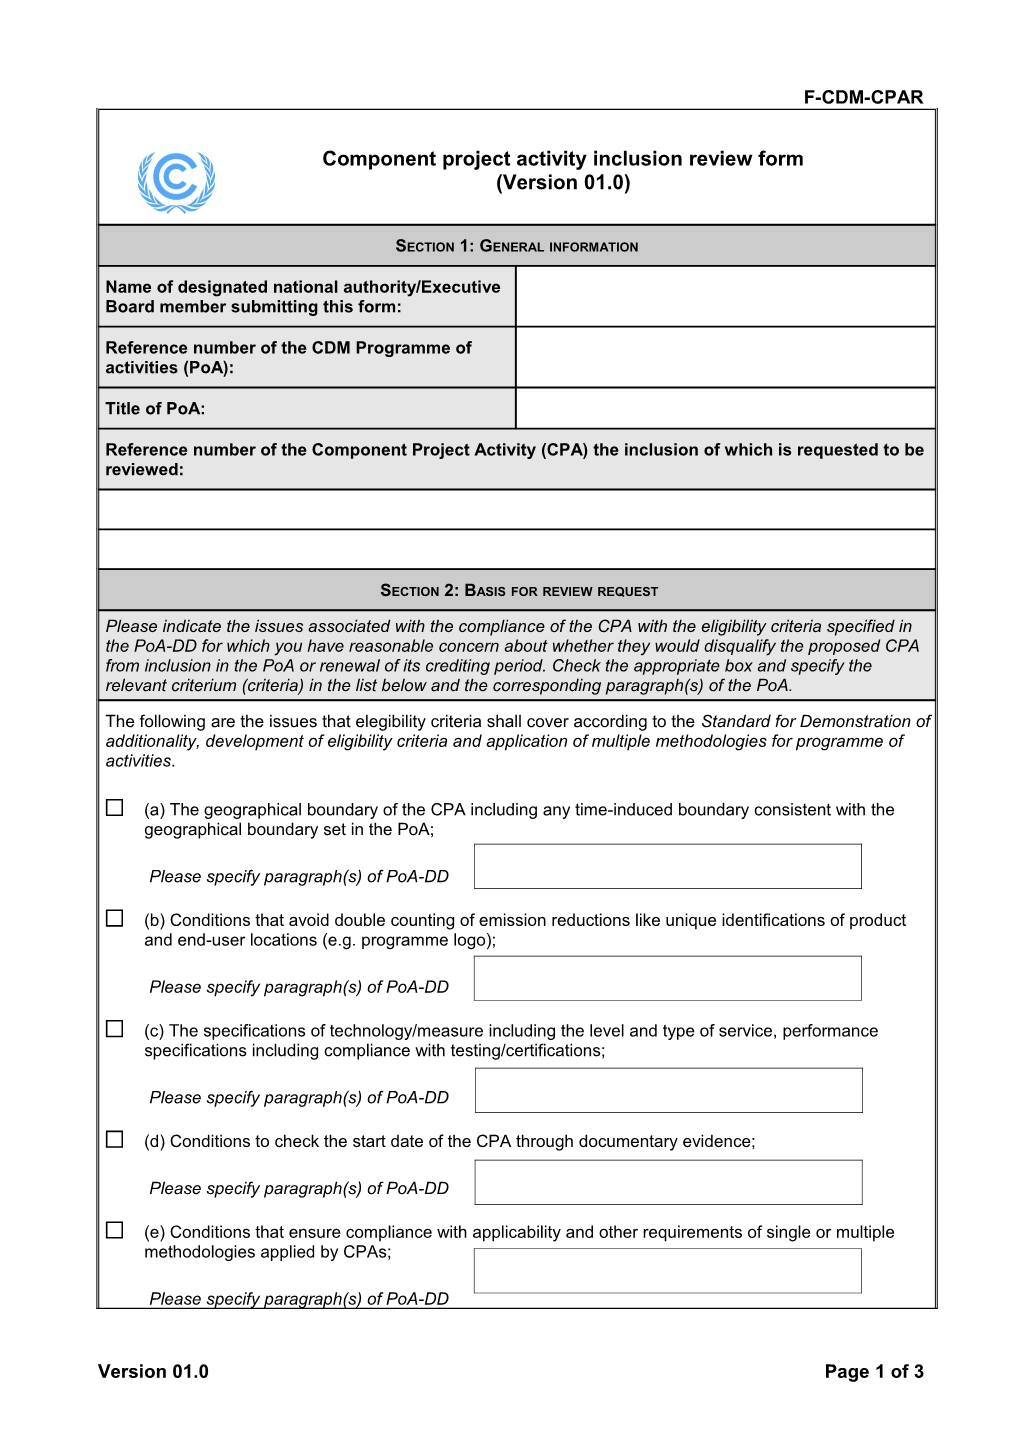 F-CDM-CPAR: Component Project Activity Inclusion Review Form. Version 01.0